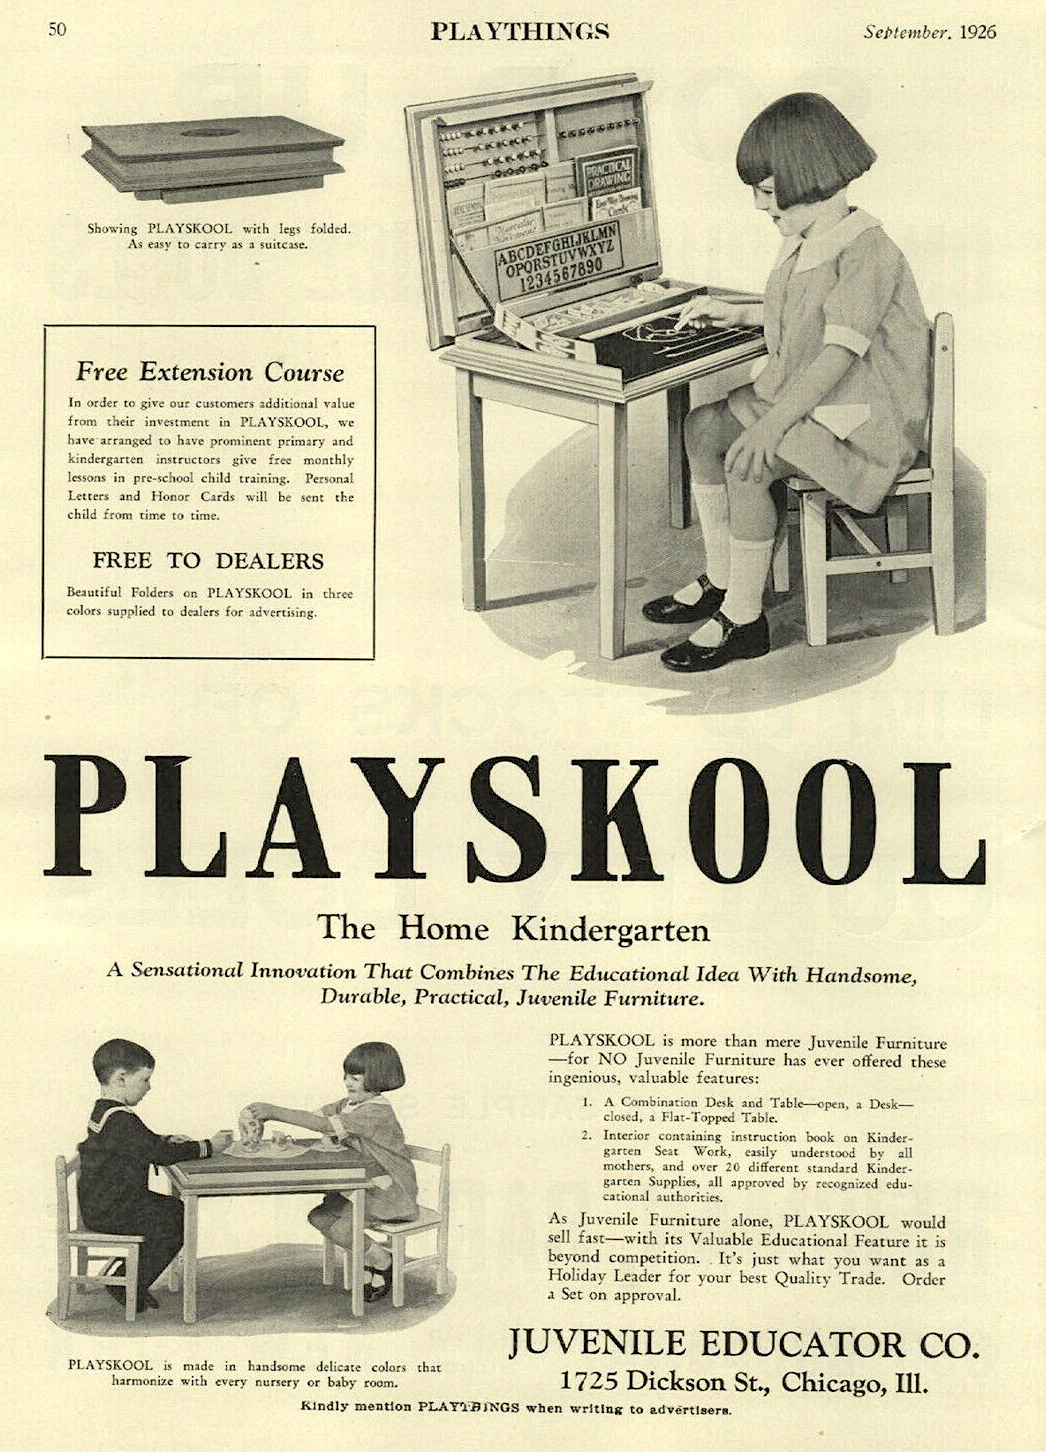 1926 Playskool ad